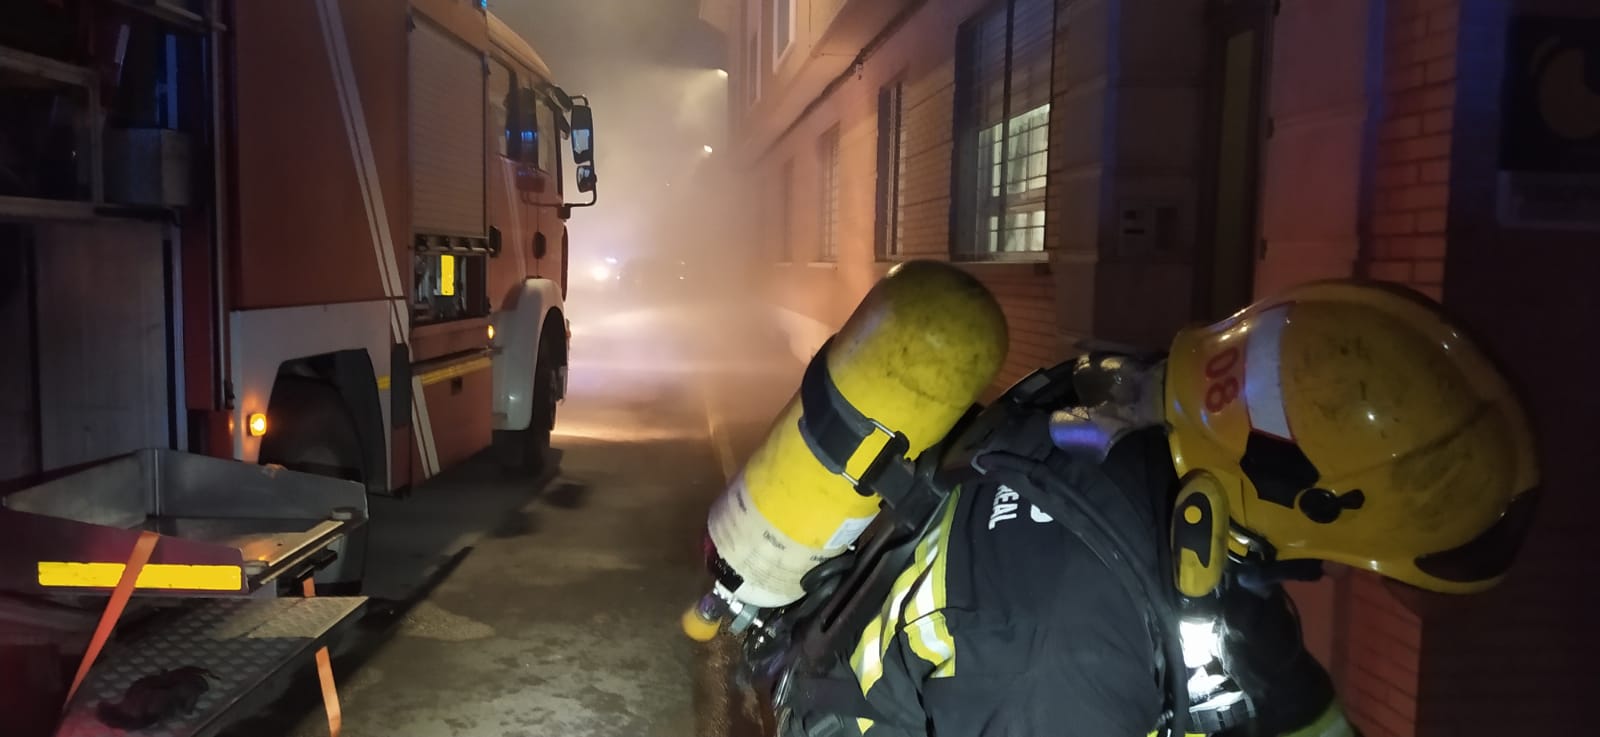 bomberos-las-casas APTB - El invierno 2021-2022 bate records negativos de víctimas mortales en incendios en #España, según el avance de datos del Estudio de @fmapfre y #APTB